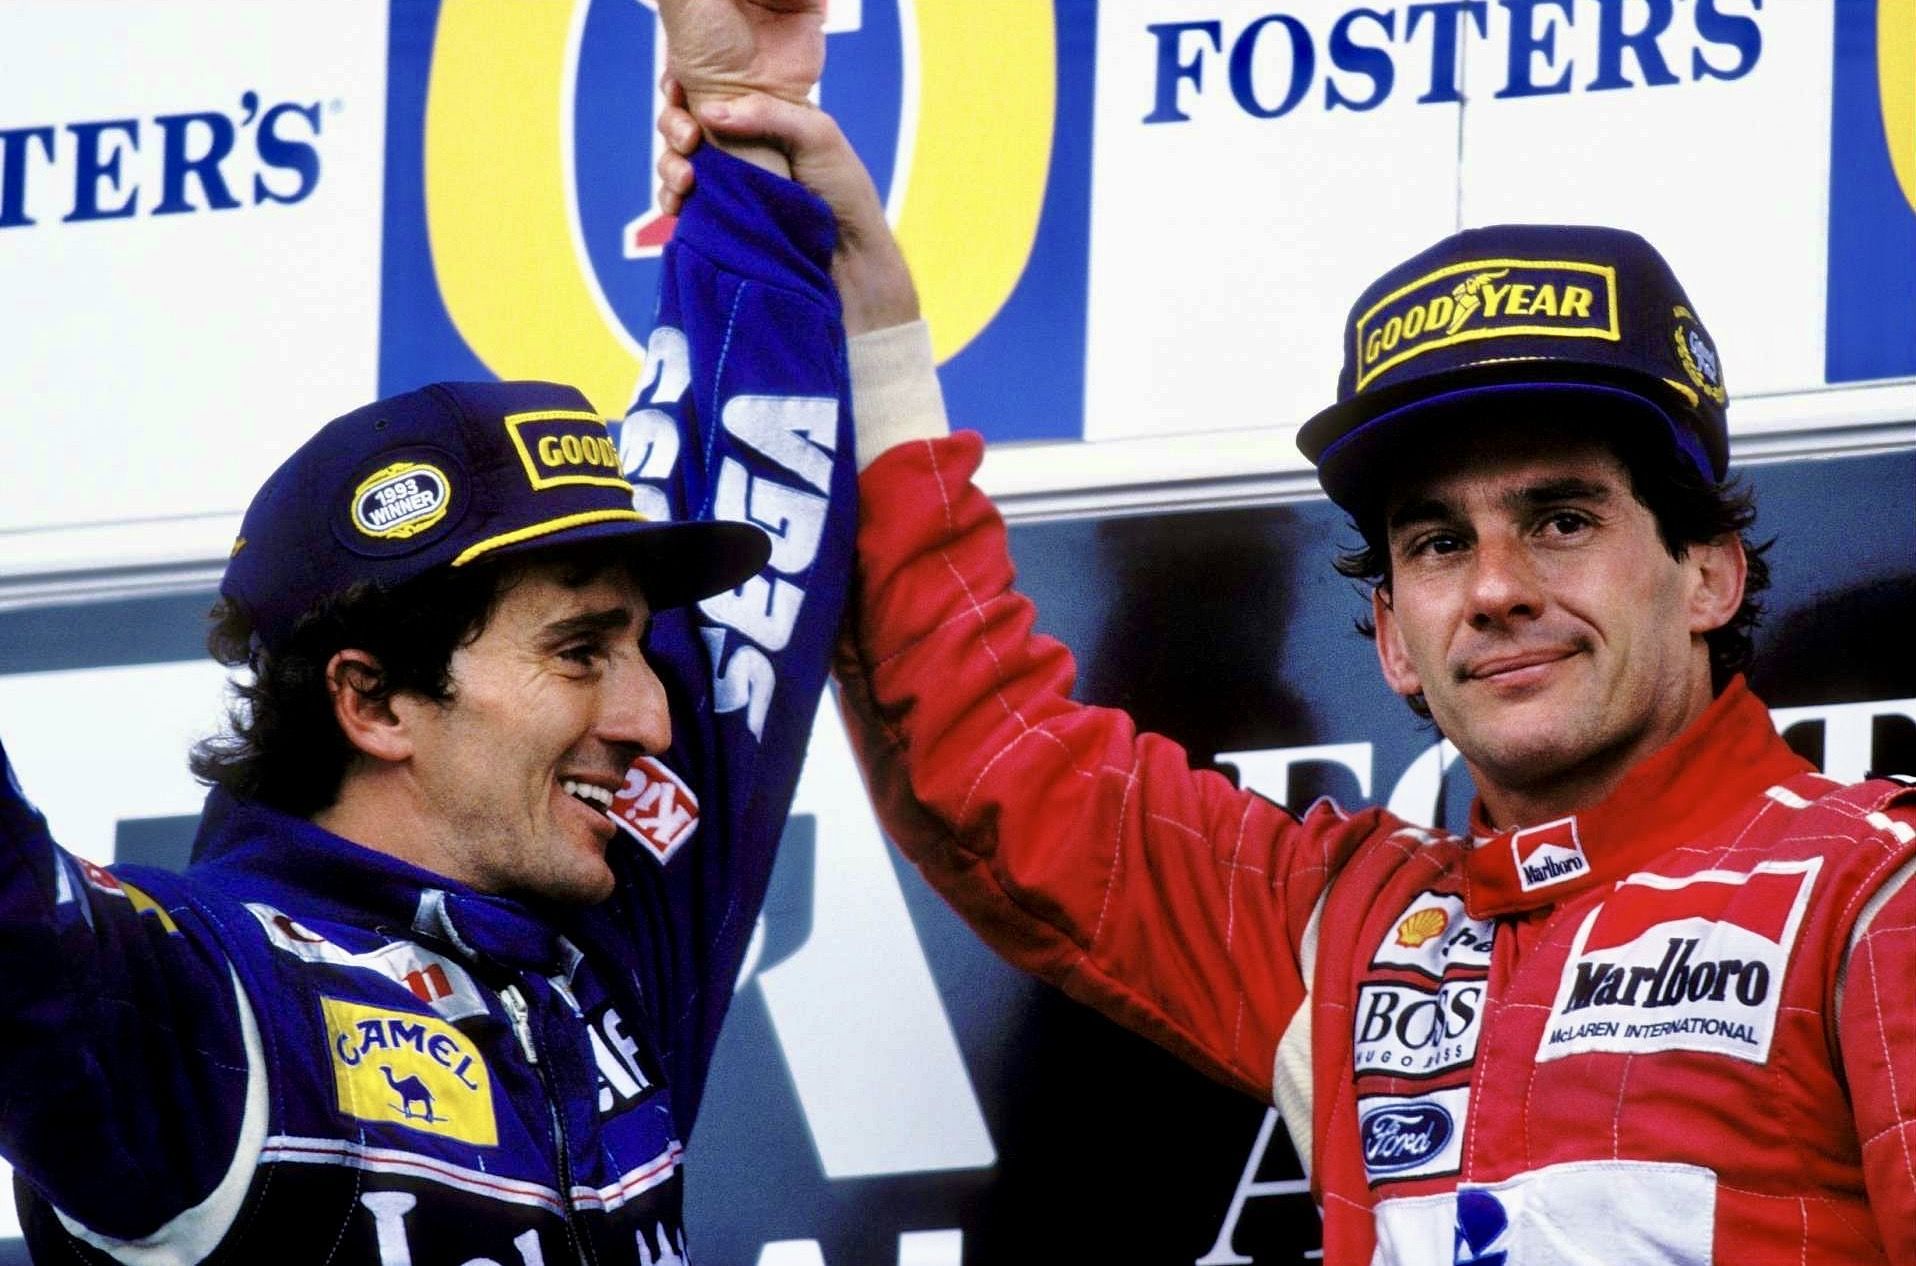 Alain Prost (left), Ayrton Senna (right) 1993 Australian Grand Prix. Courtesy:Twitter/@adelaide_gp